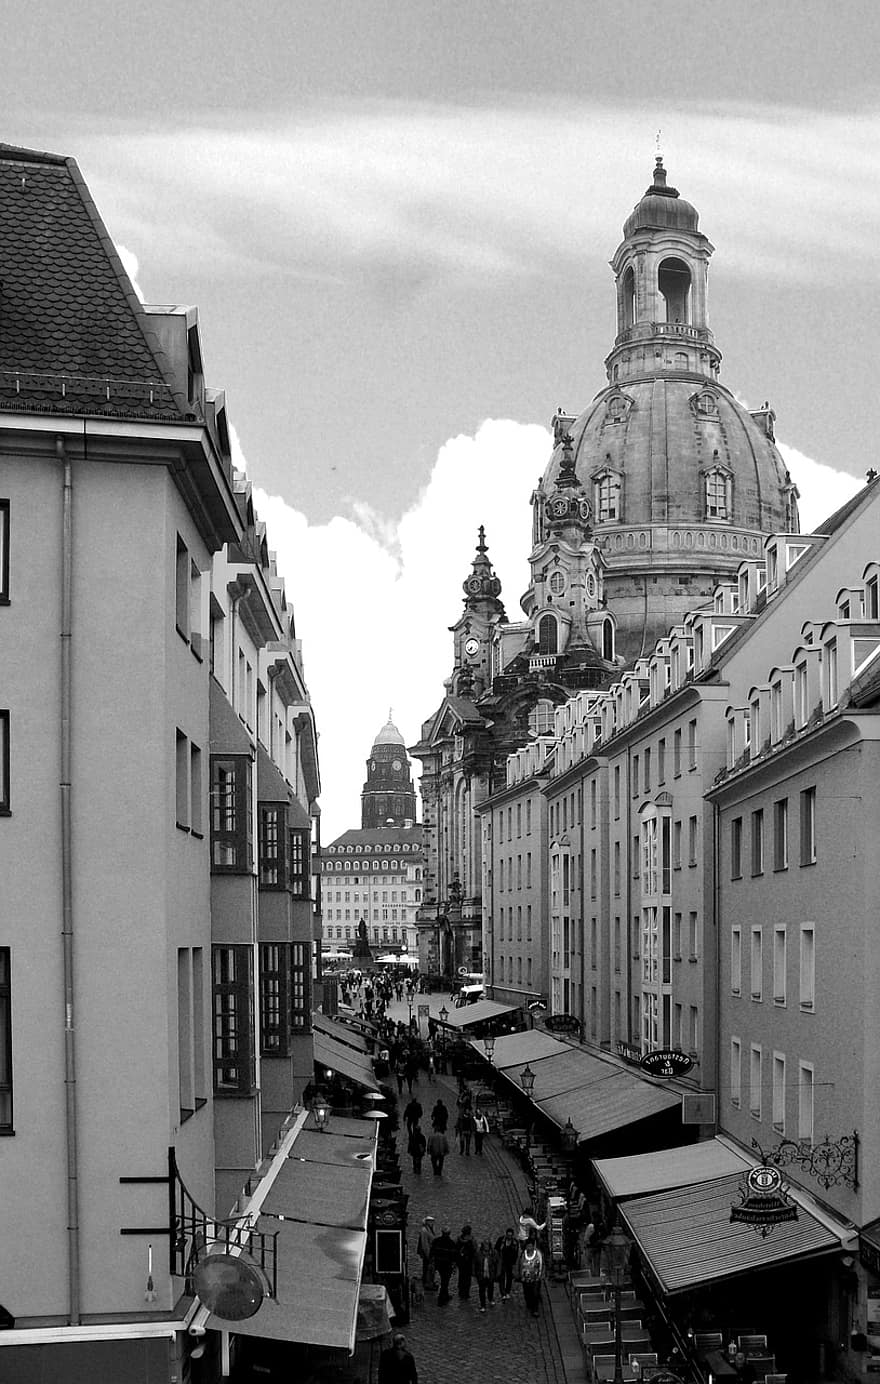 rakennus, monumentti, kupoli, kiertoajelu, siemennesteen oopperatalo, maamerkki, Dresden, saxony, arkkitehtuuri, historiallinen, kaupunki